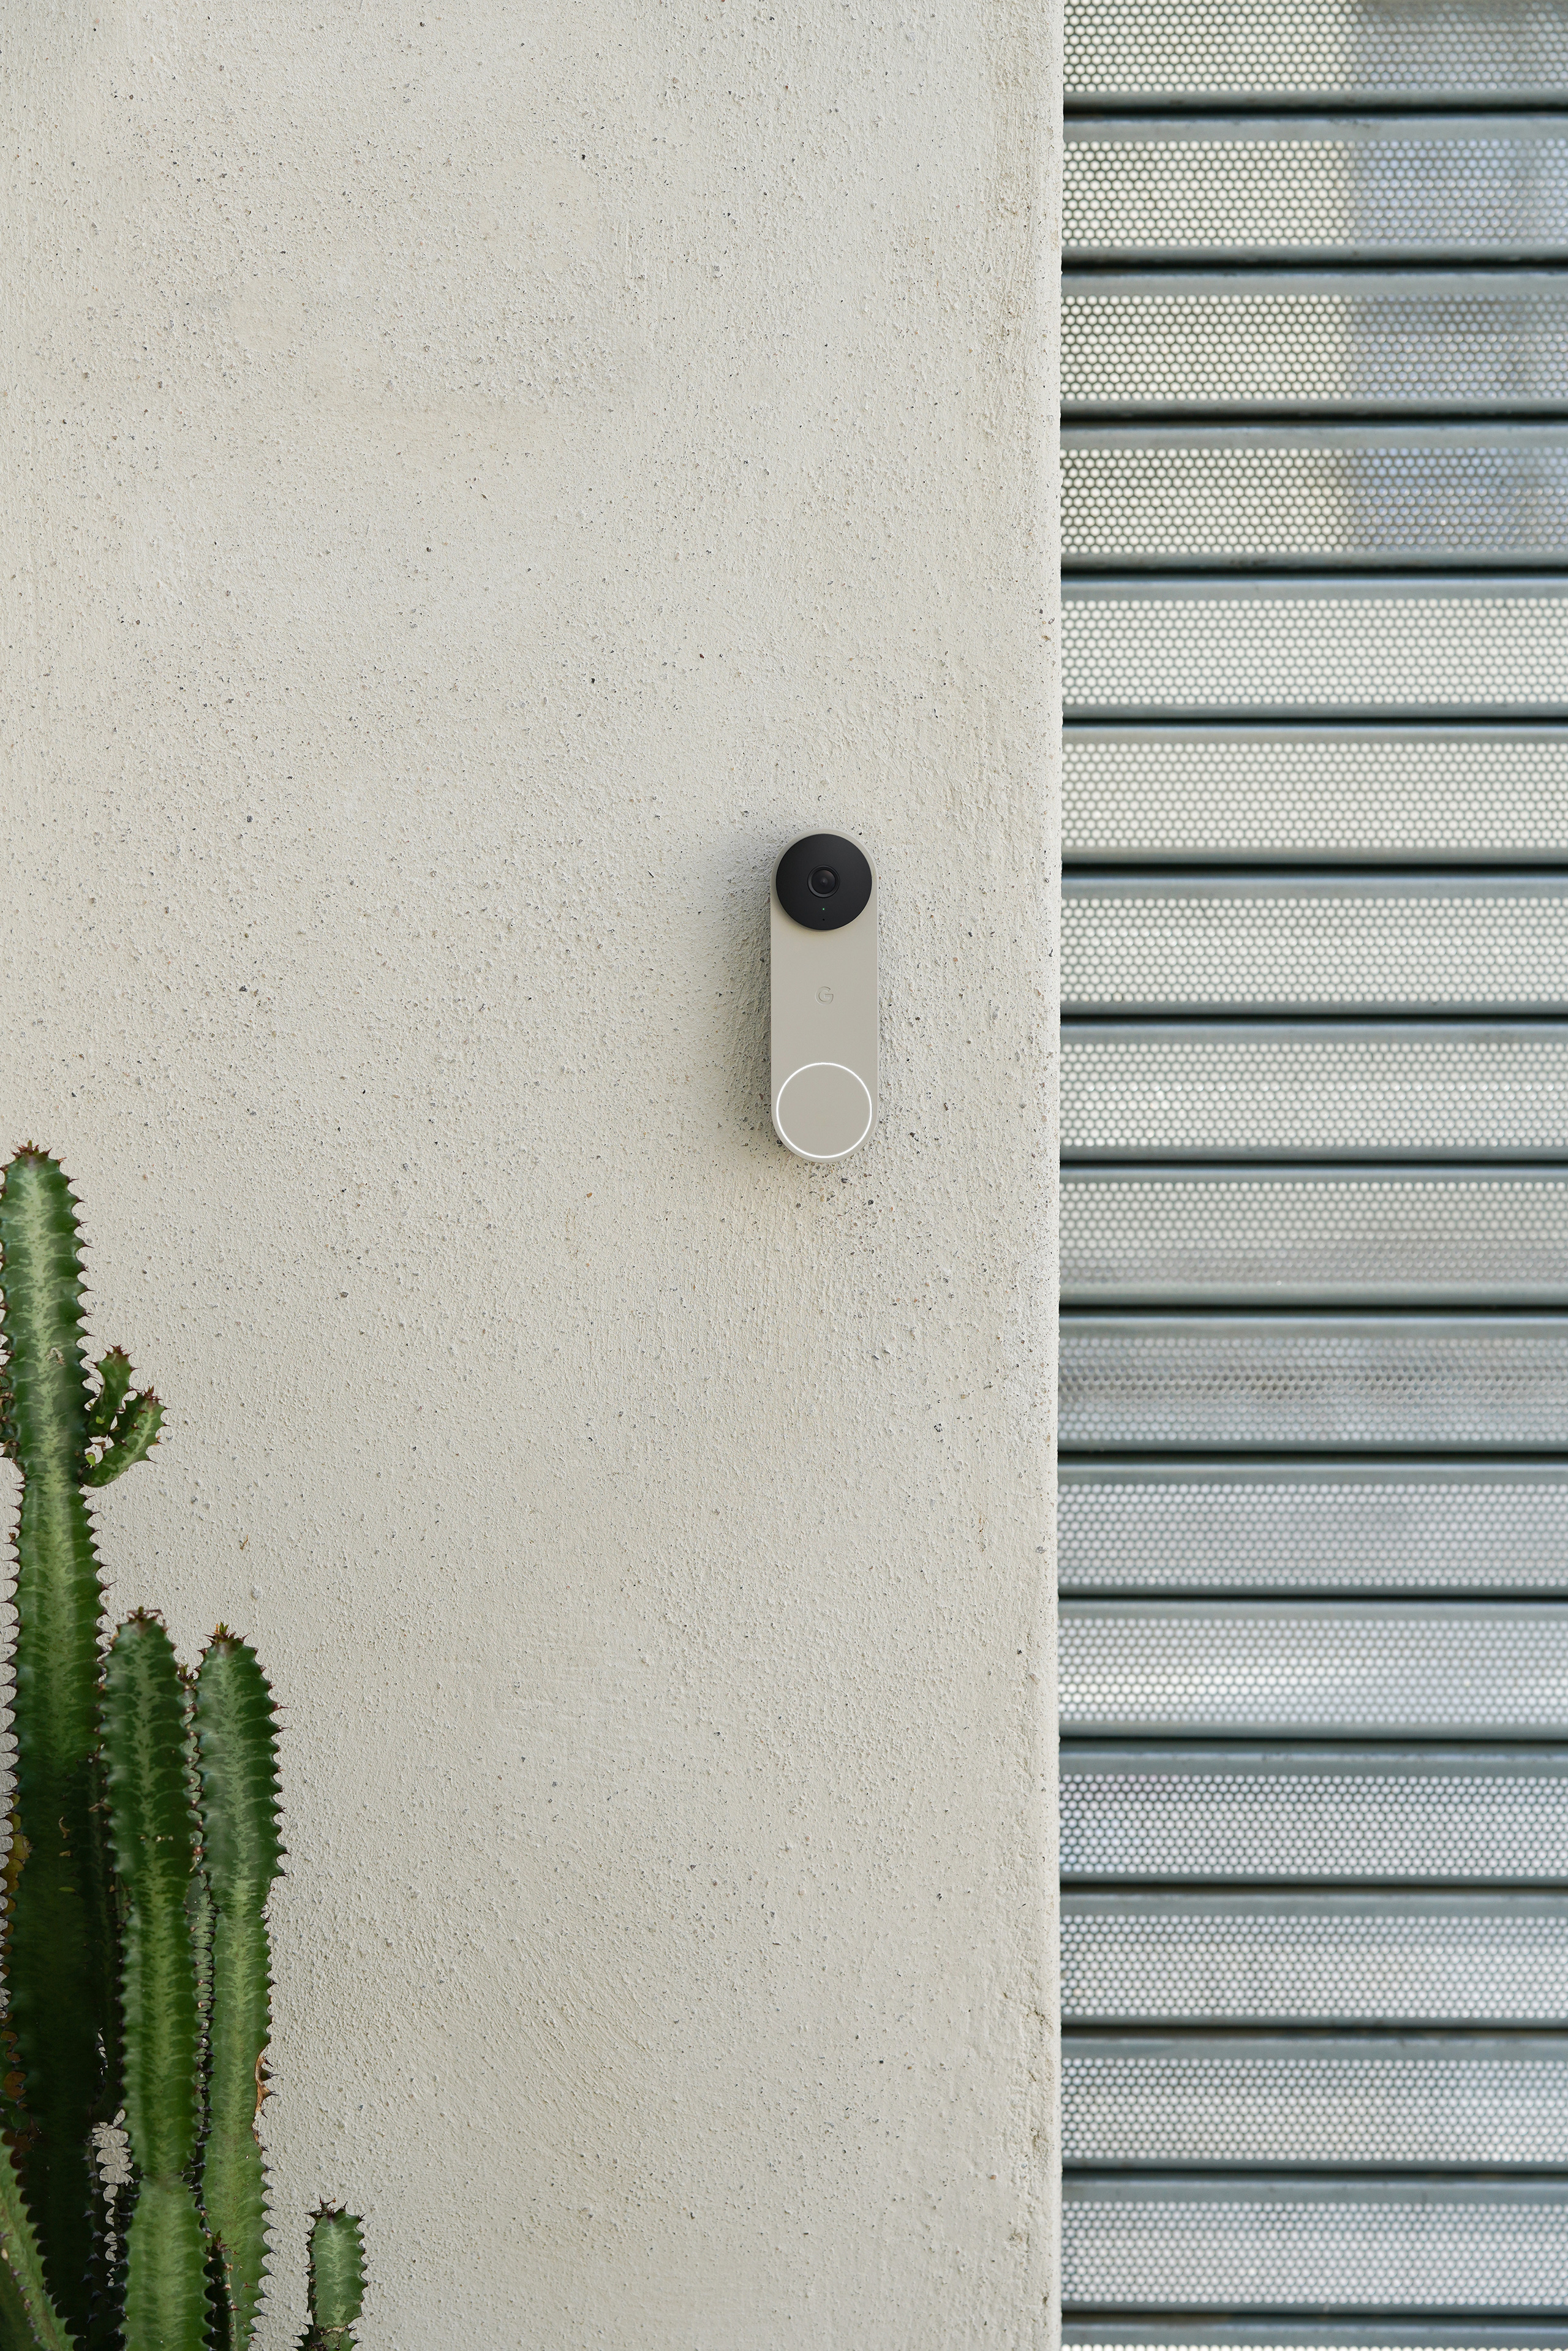 Nest Doorbell (wired, 2nd gen)